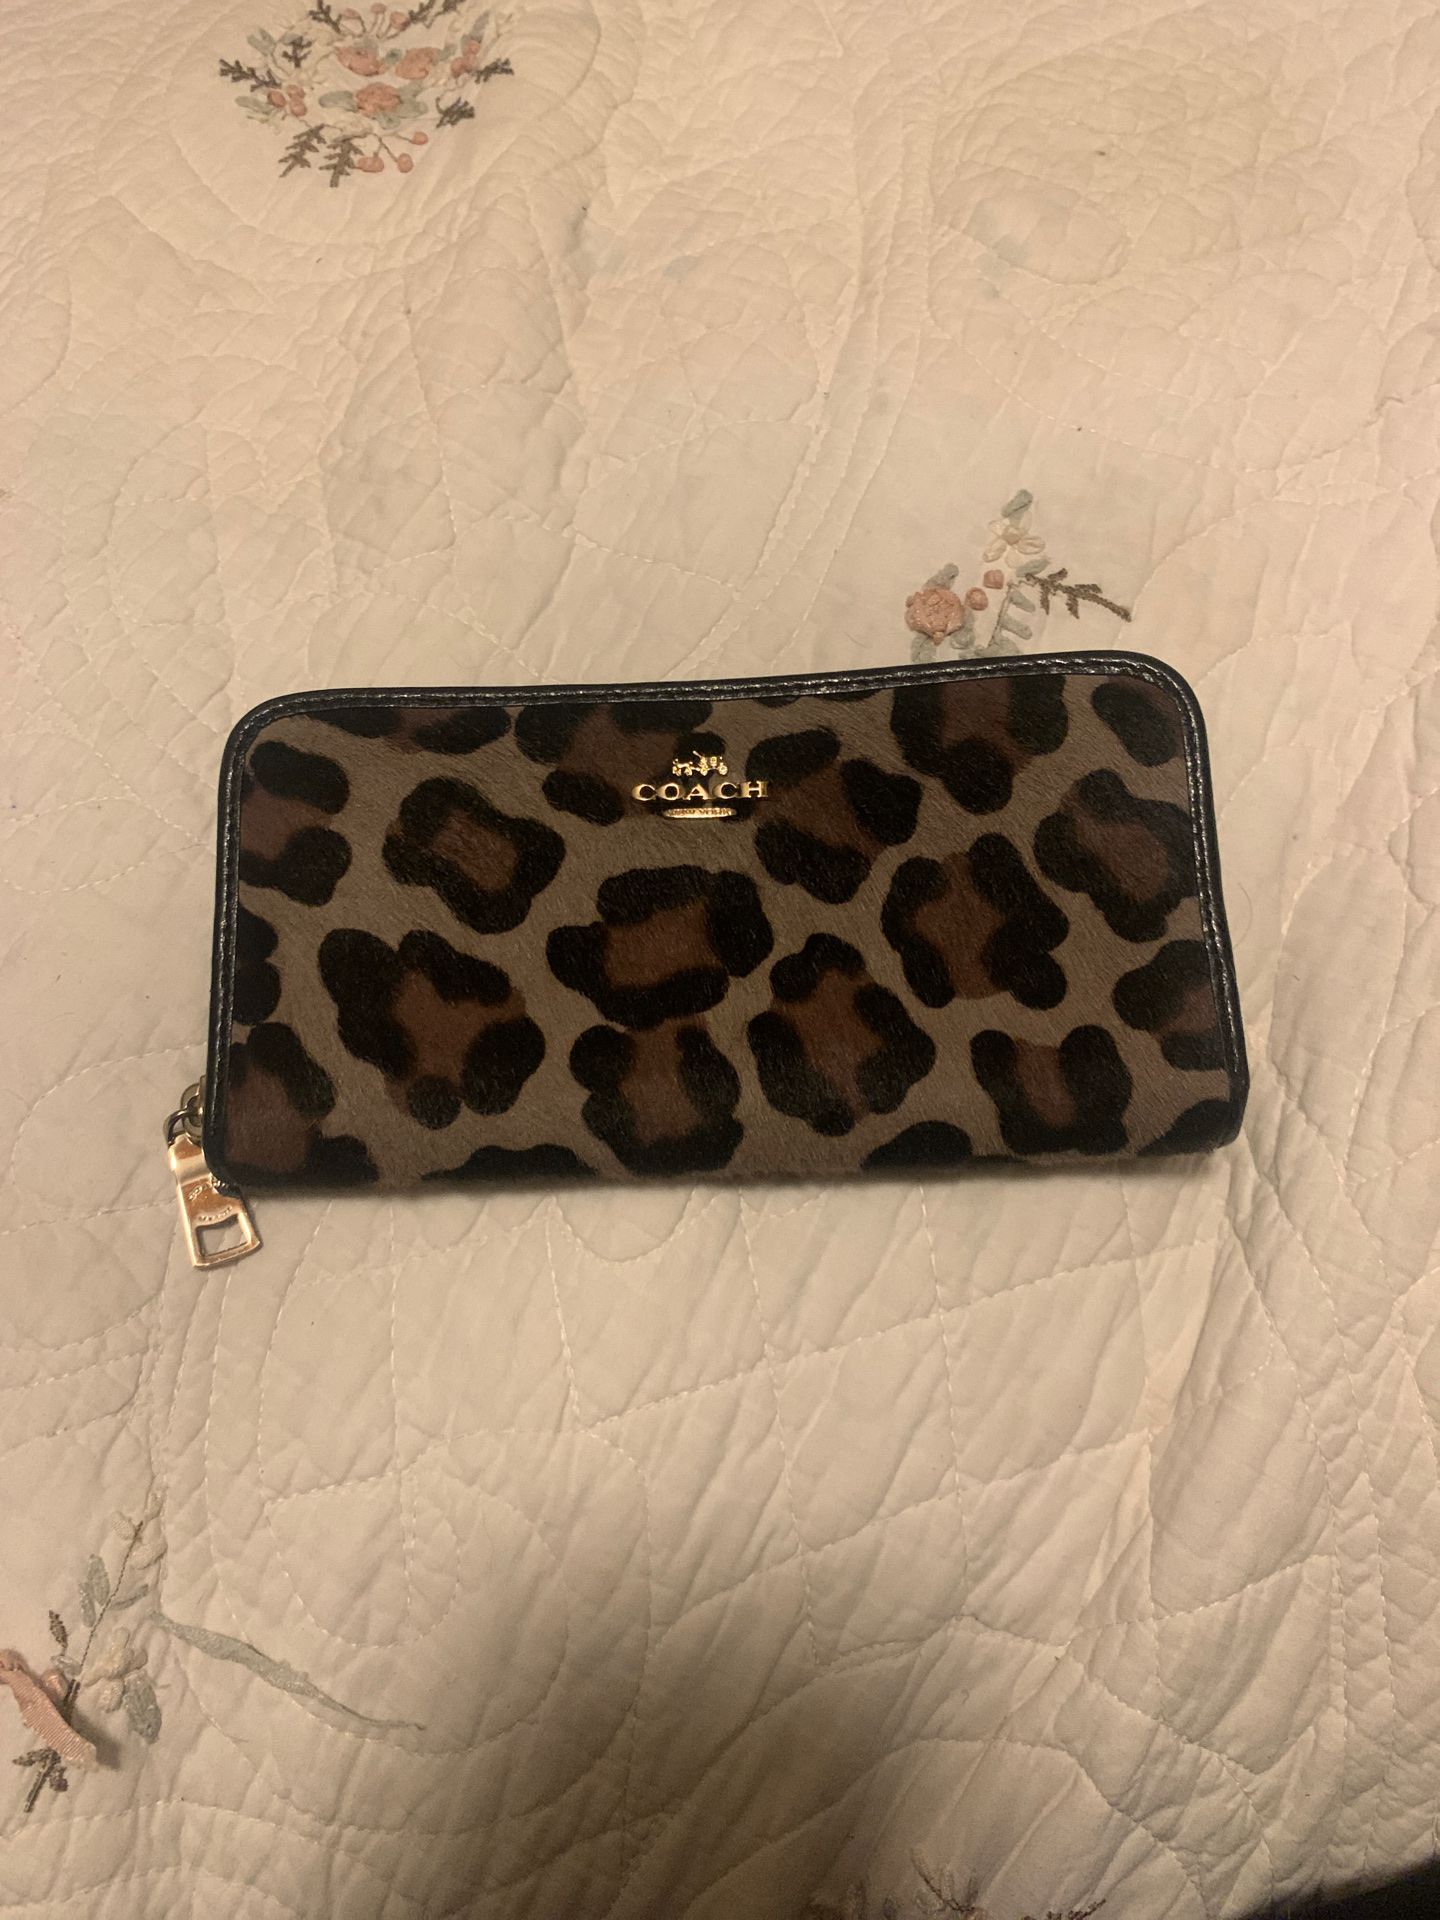 Leopard coach wallet